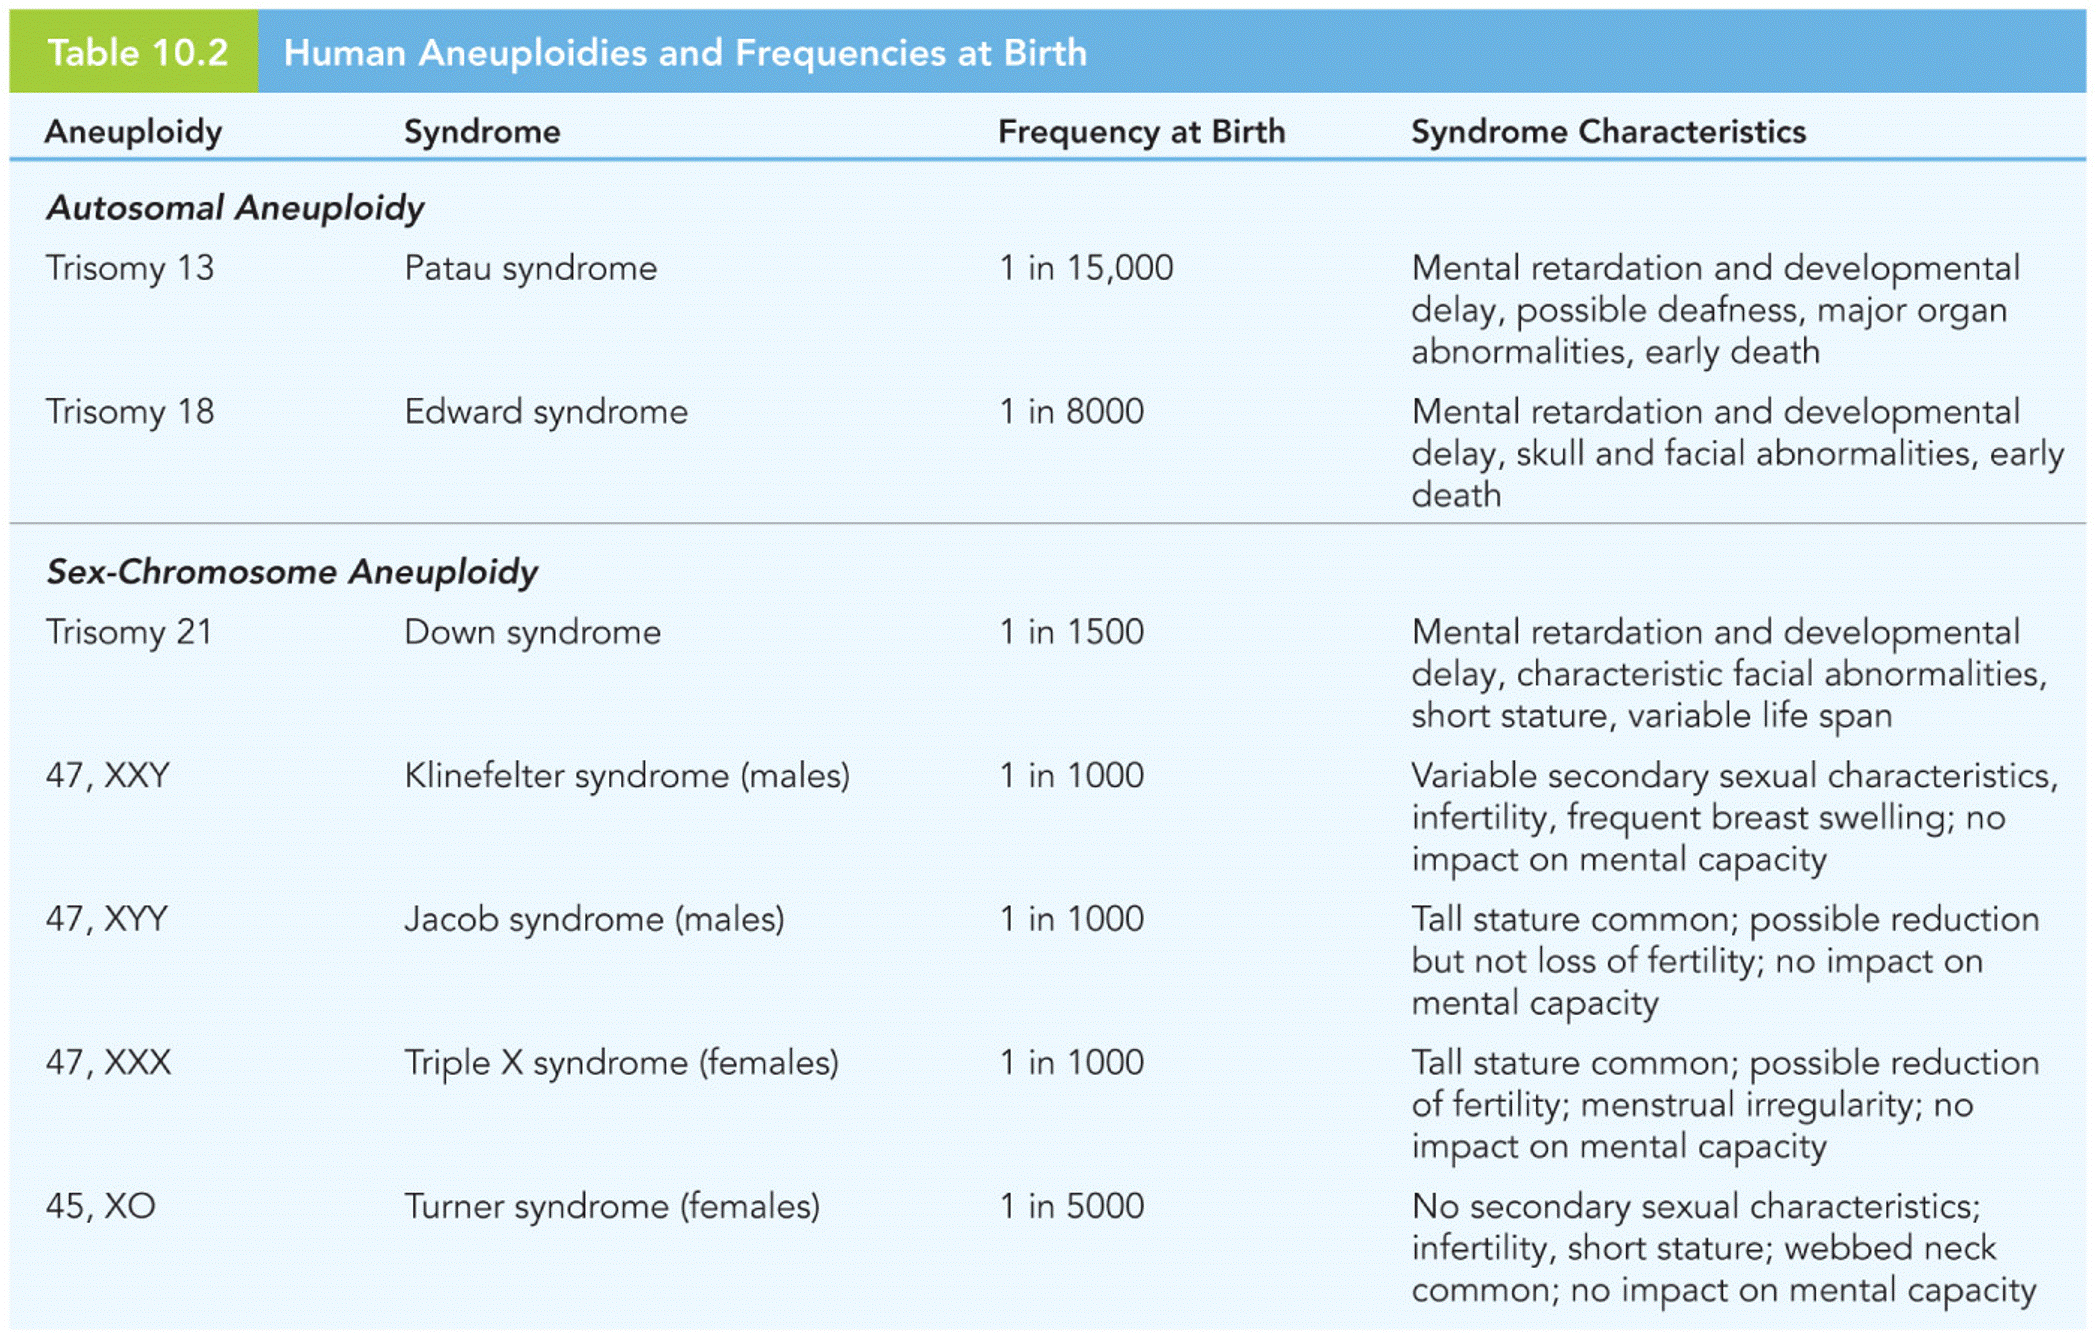 Human Aneuploidies and Frequencies at Birth